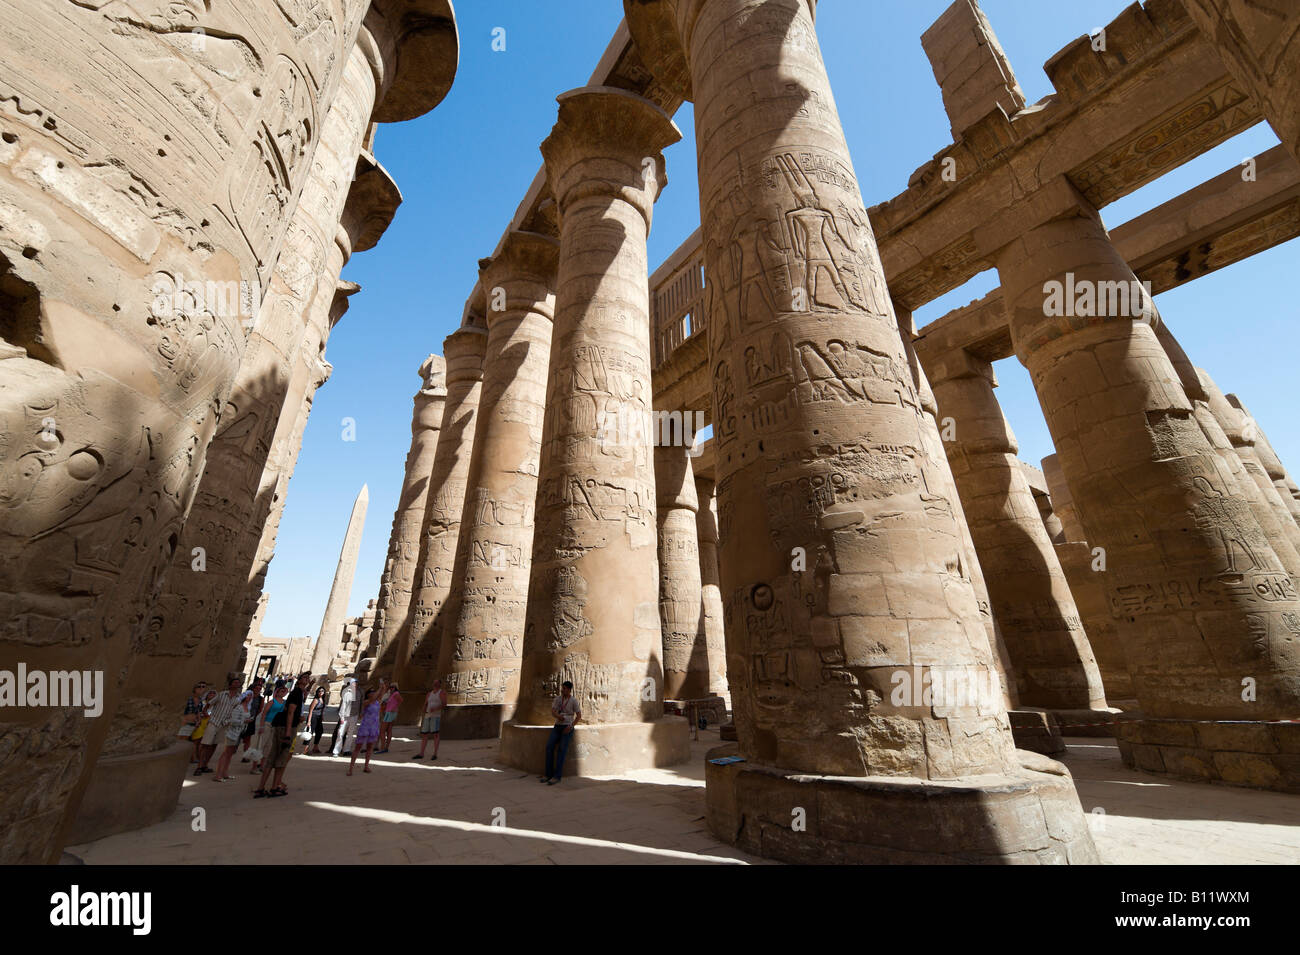 Piliers dans la salle hypostyle et l'Obélisque Hatshepsout, de la Cité parlementaire d'Amon, Temple de Karnak, Louxor, vallée du Nil, l'Egypte Banque D'Images